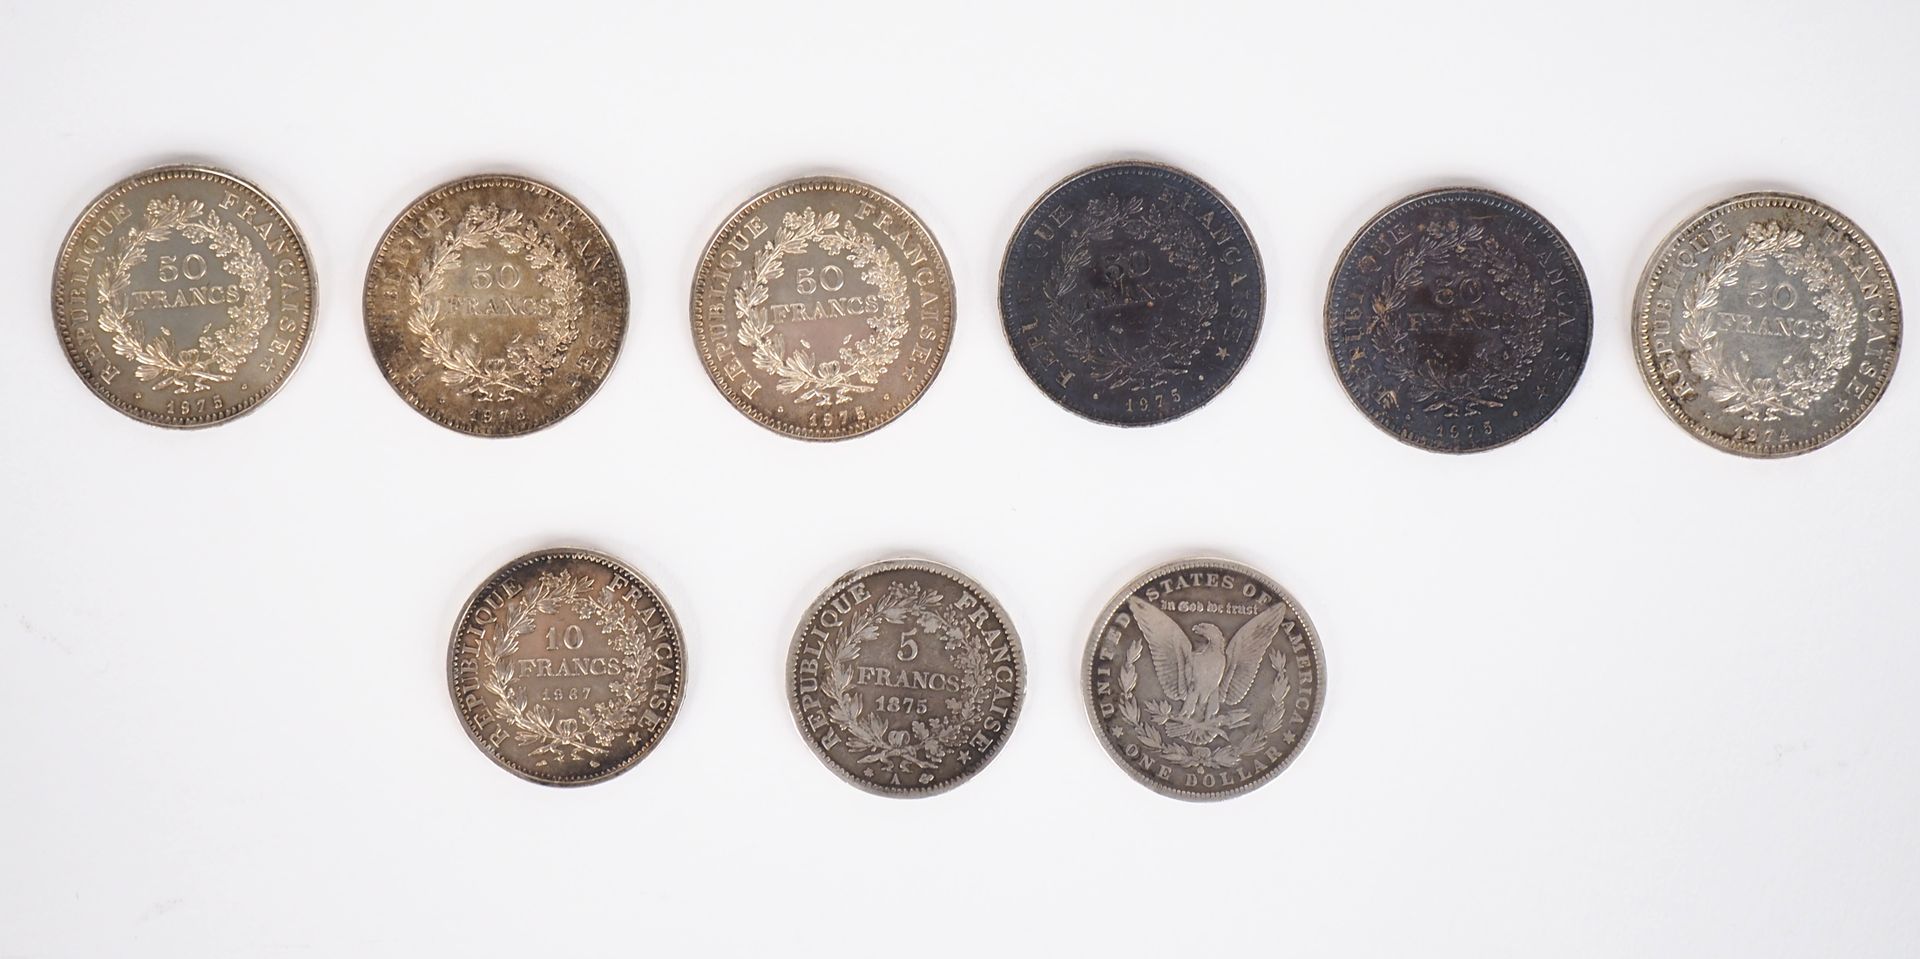 Null - sechs 50-Franc-Münzen aus Silber, 1974 und 1975 (x5).

- eine 10-Franc-Mü&hellip;